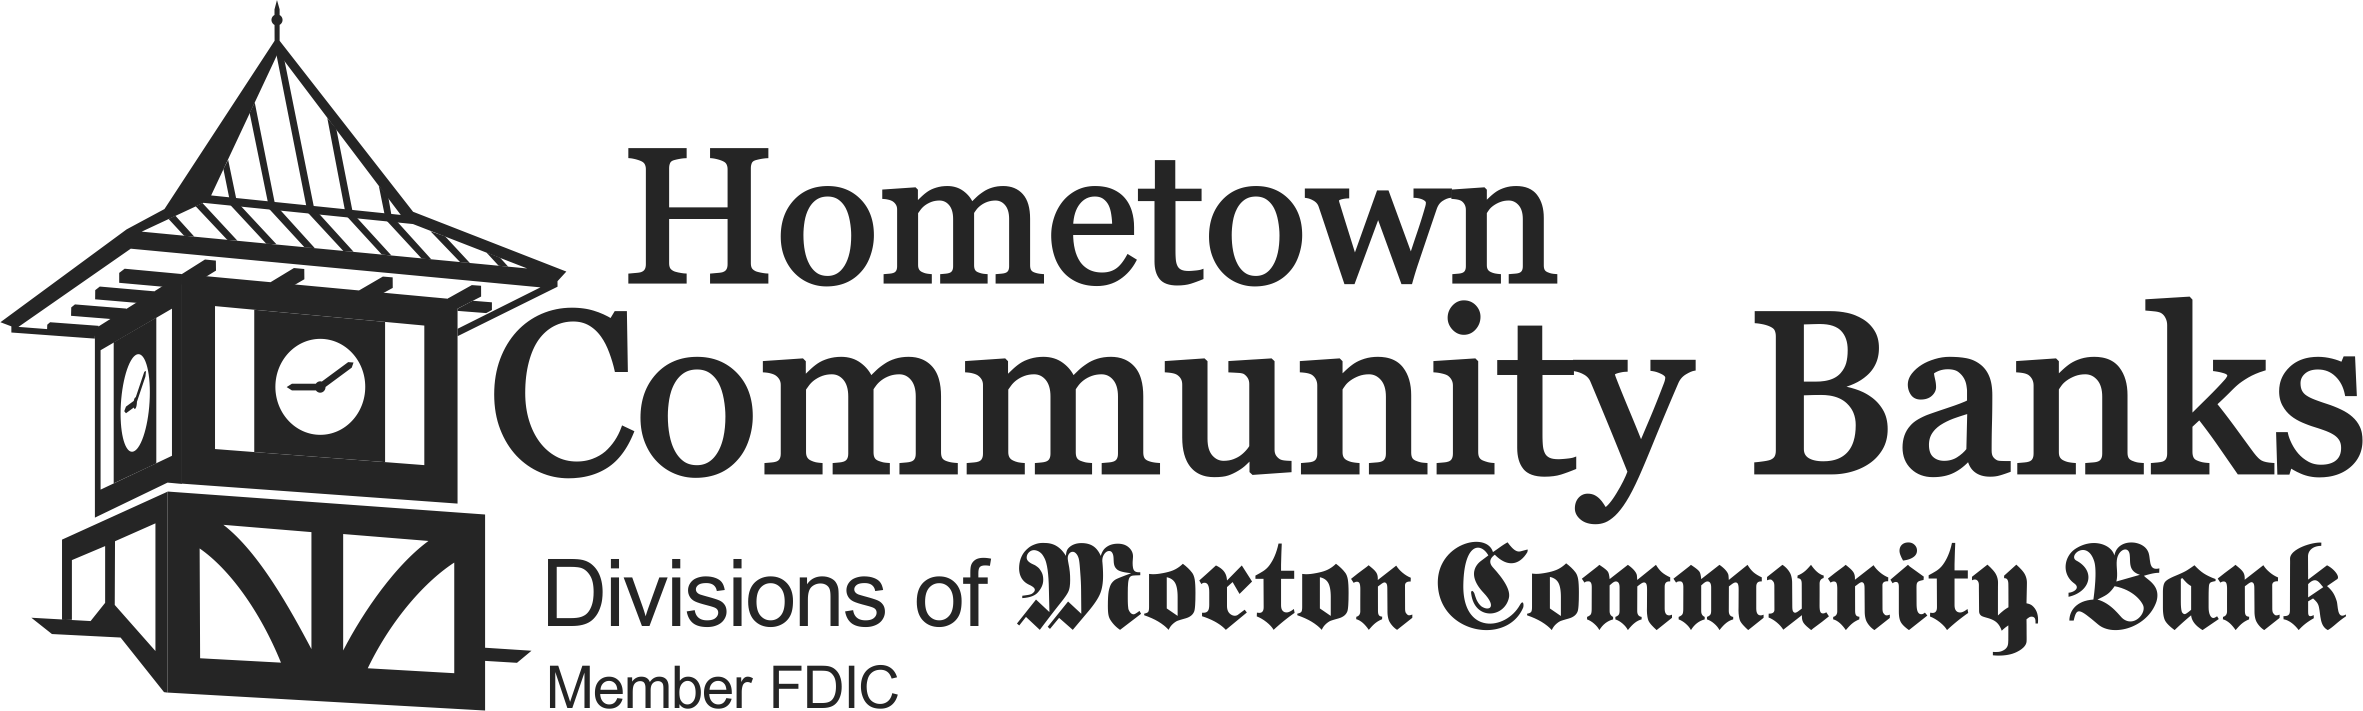 Hometown Community Banks:  Divisions of Morton Community Banks, Member FDIC